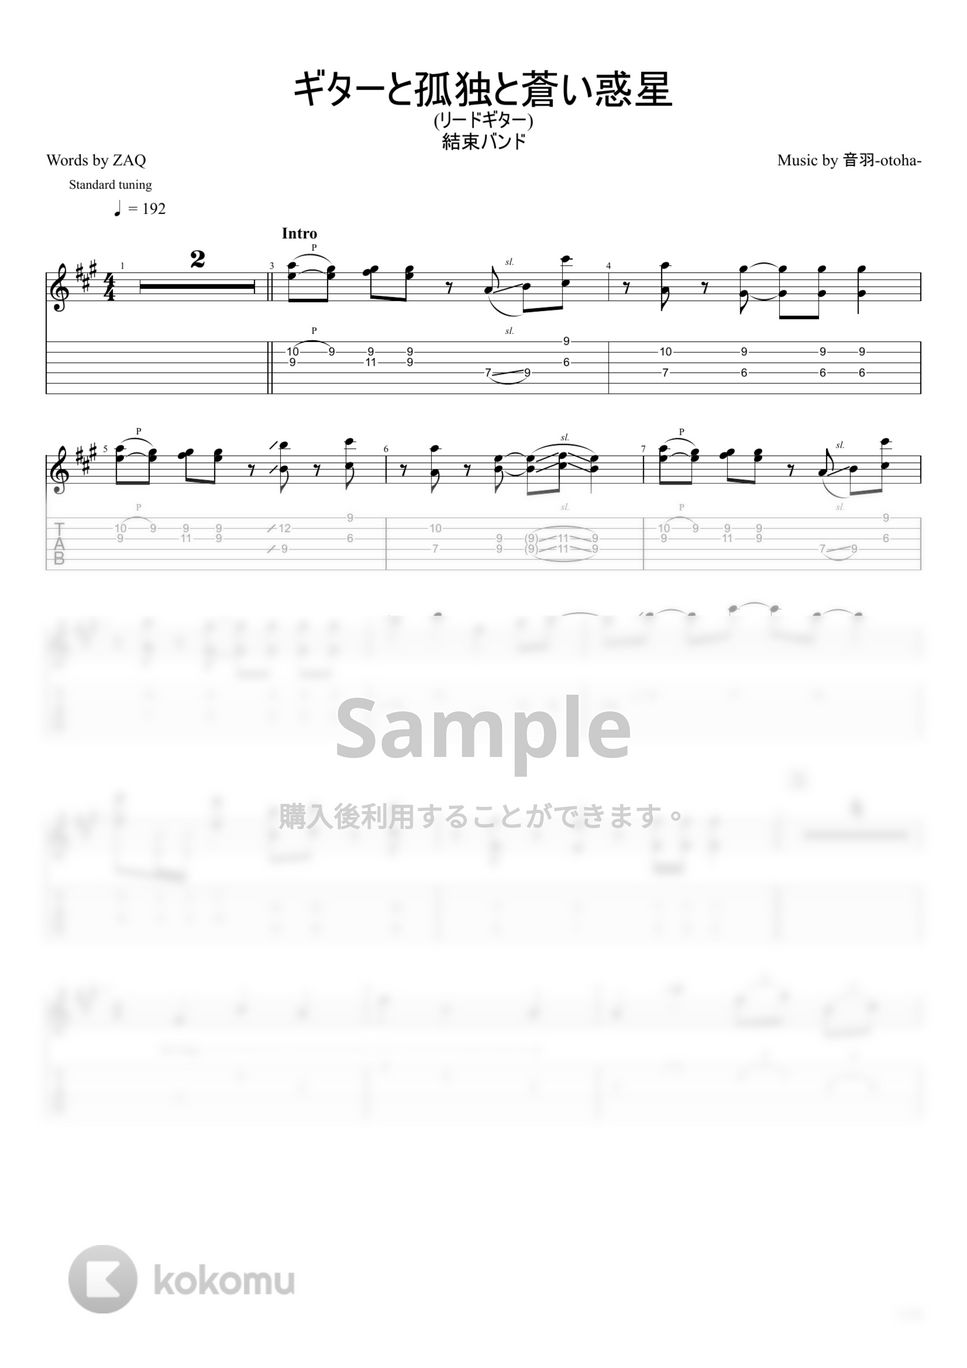 結束バンド - ギターと孤独と蒼い惑星 (リードギター) by u3danchou